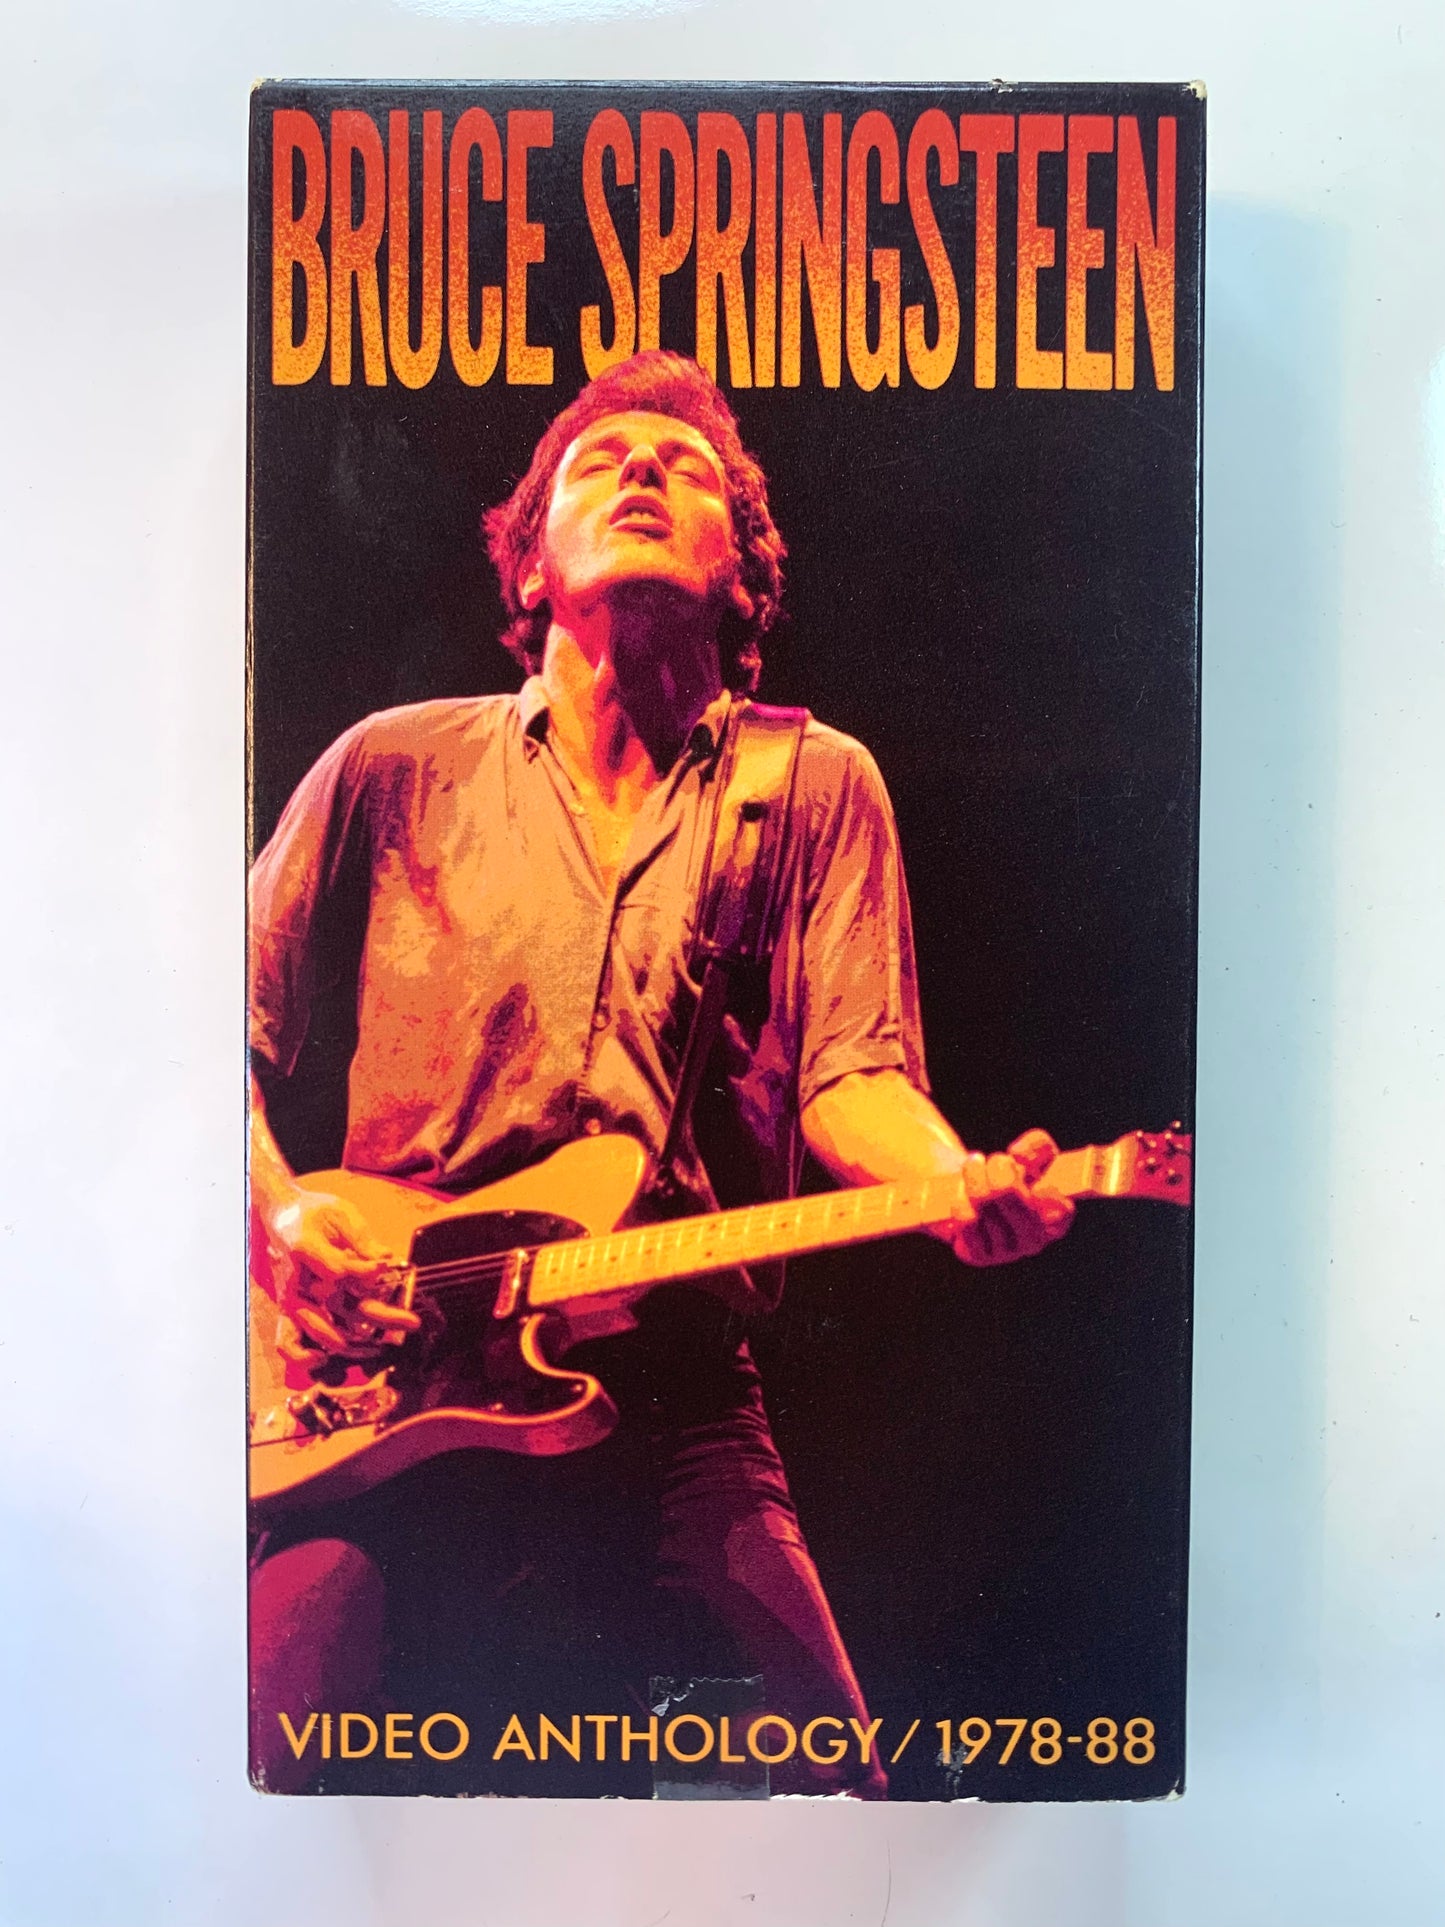 Bruce Springsteen, Video Anthology 1978-88